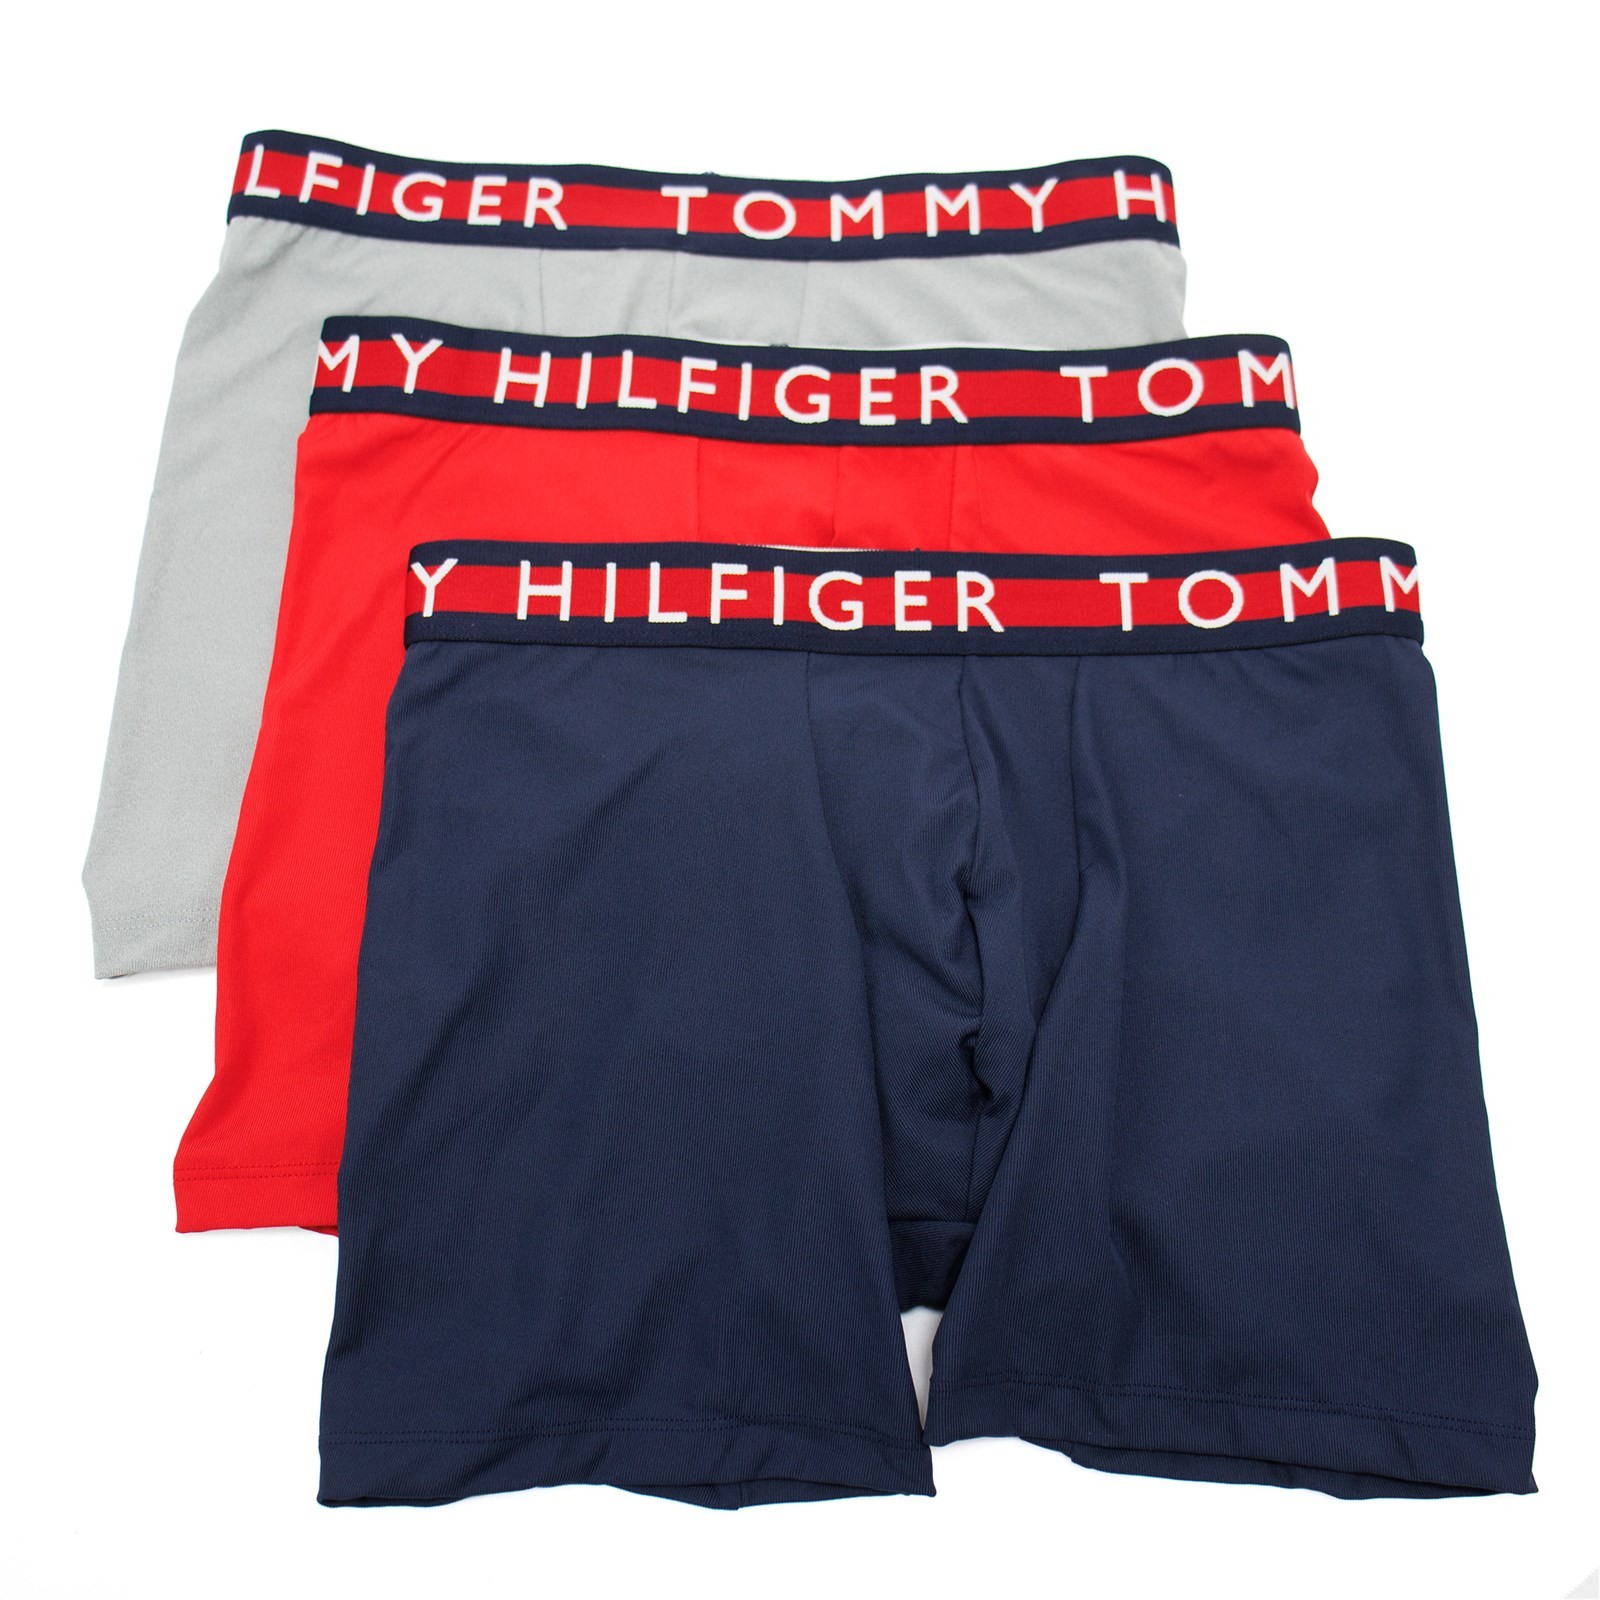 Tommy Hilfiger Men's 5-Pk. Cotton Classics Boxer Briefs - Macy's